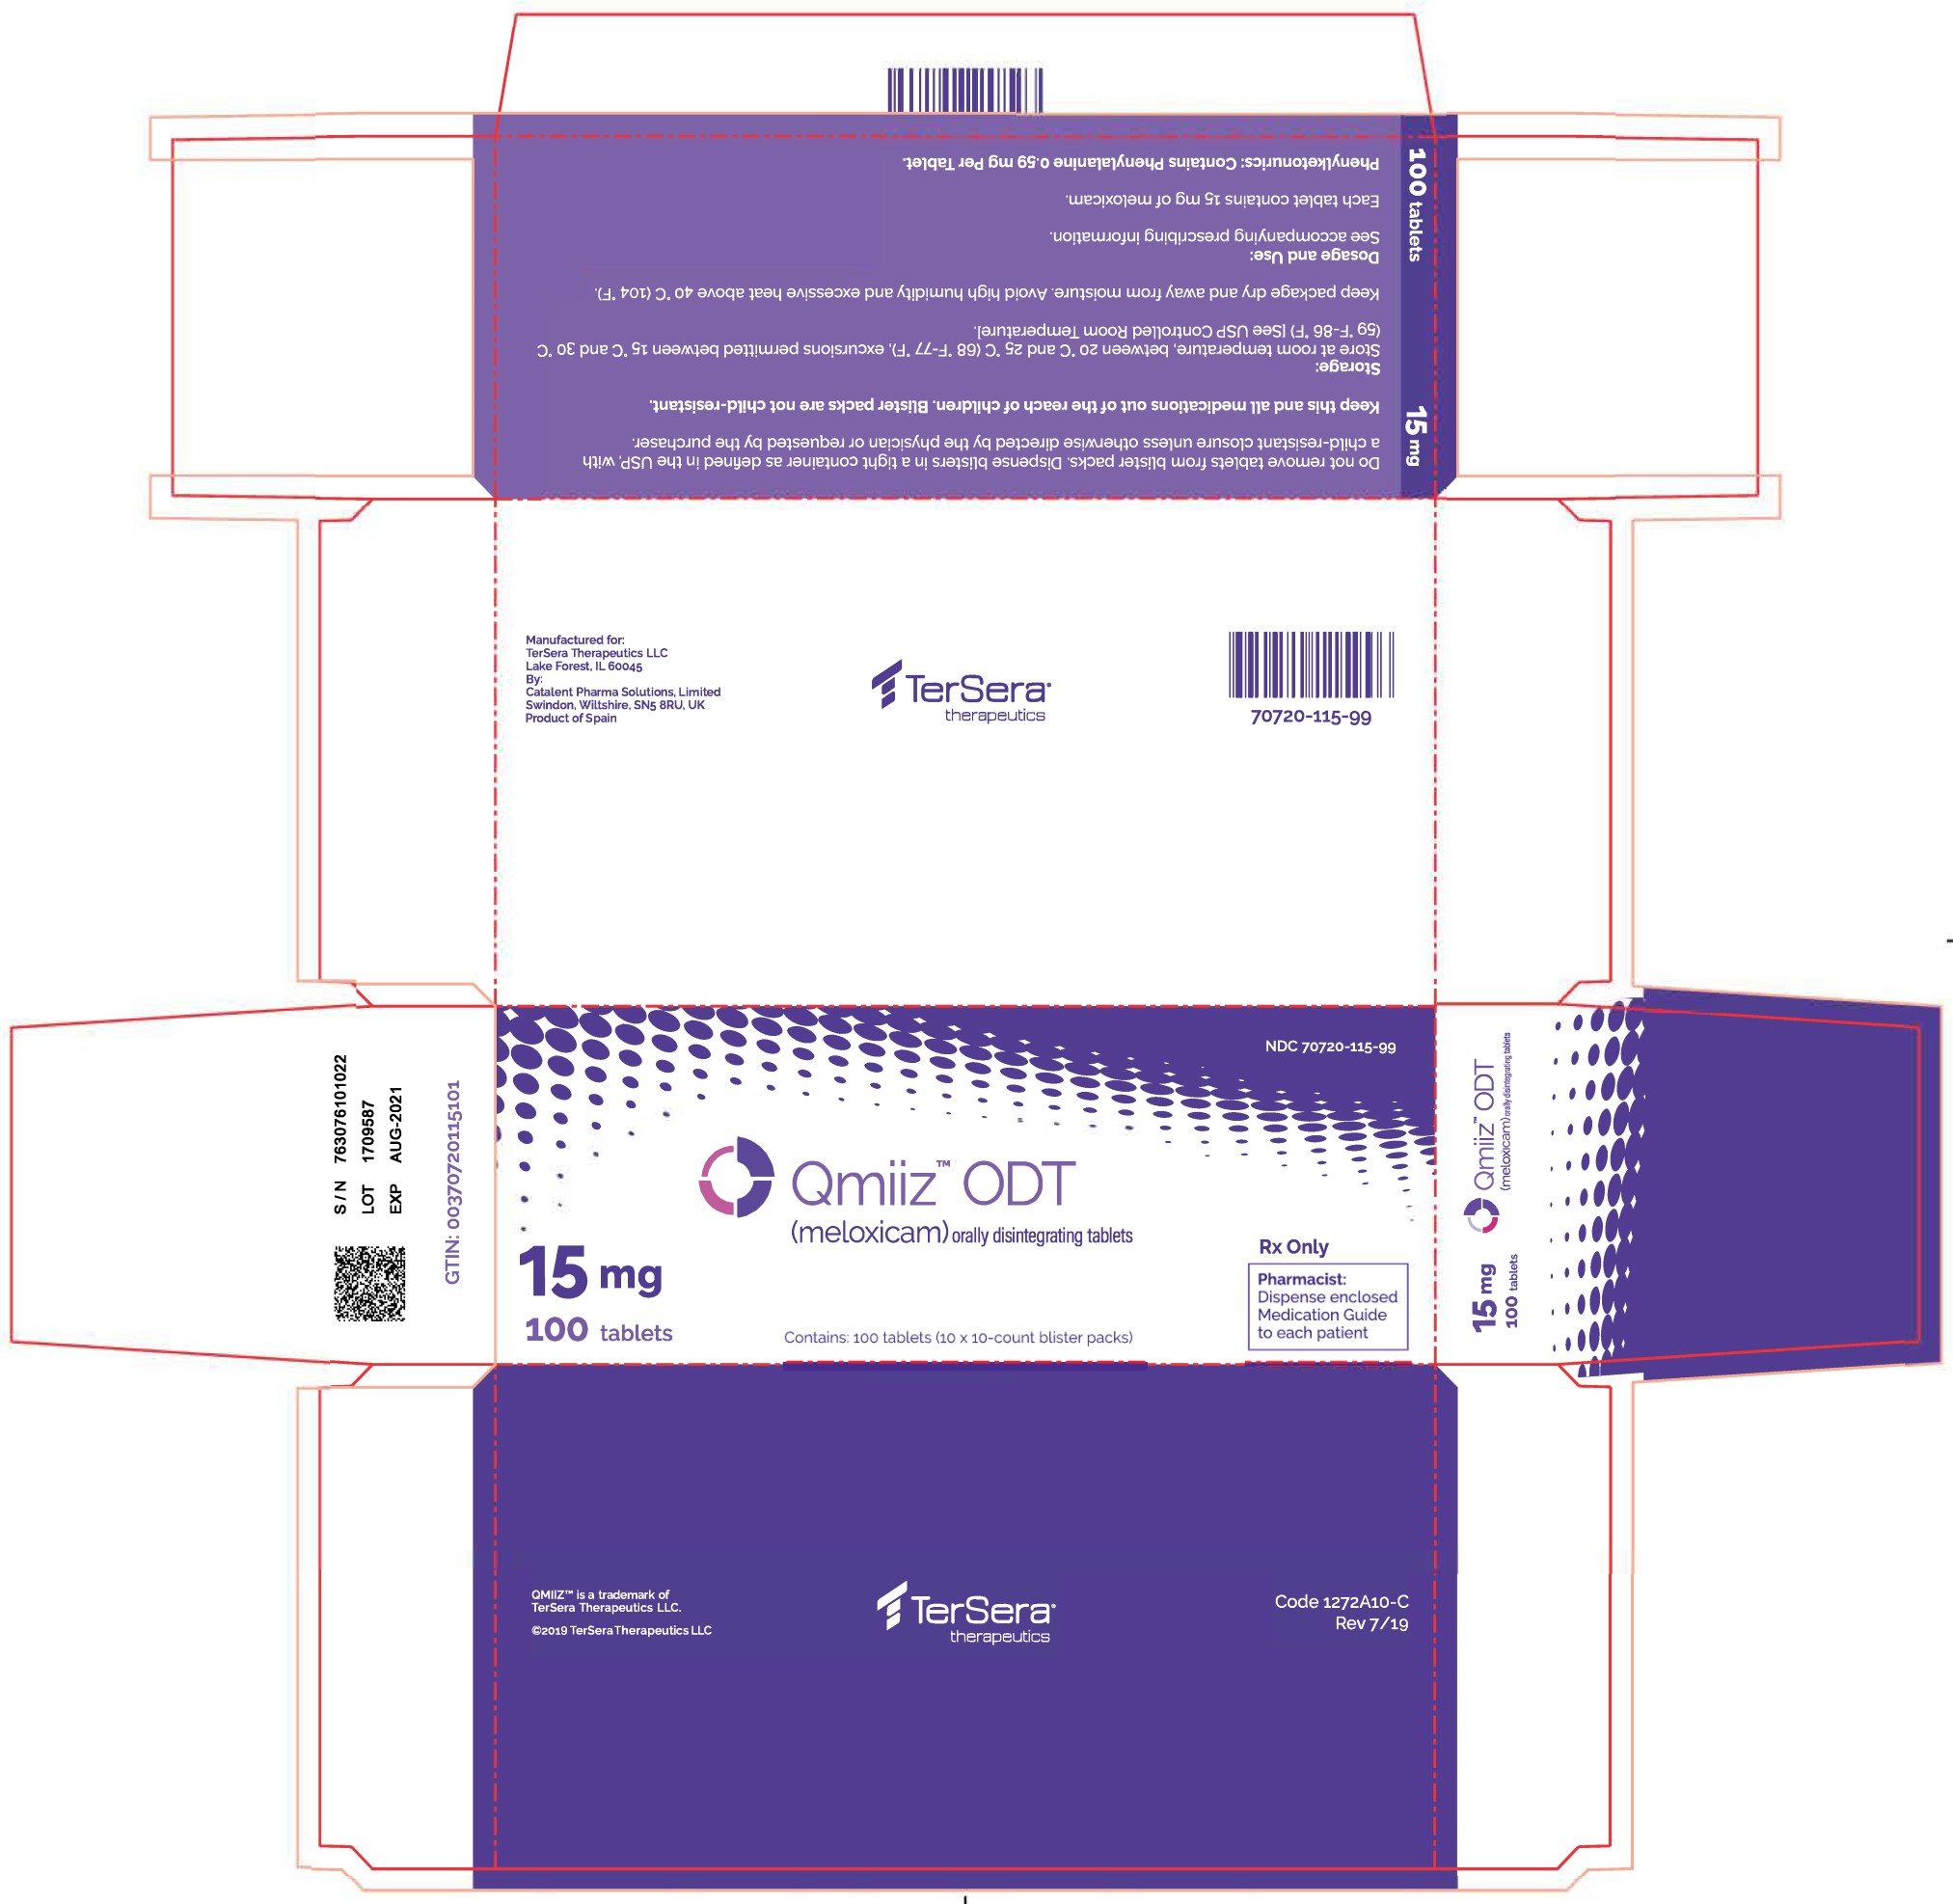 PRINCIPAL DISPLAY PANEL - 15 mg, 100 ct Carton